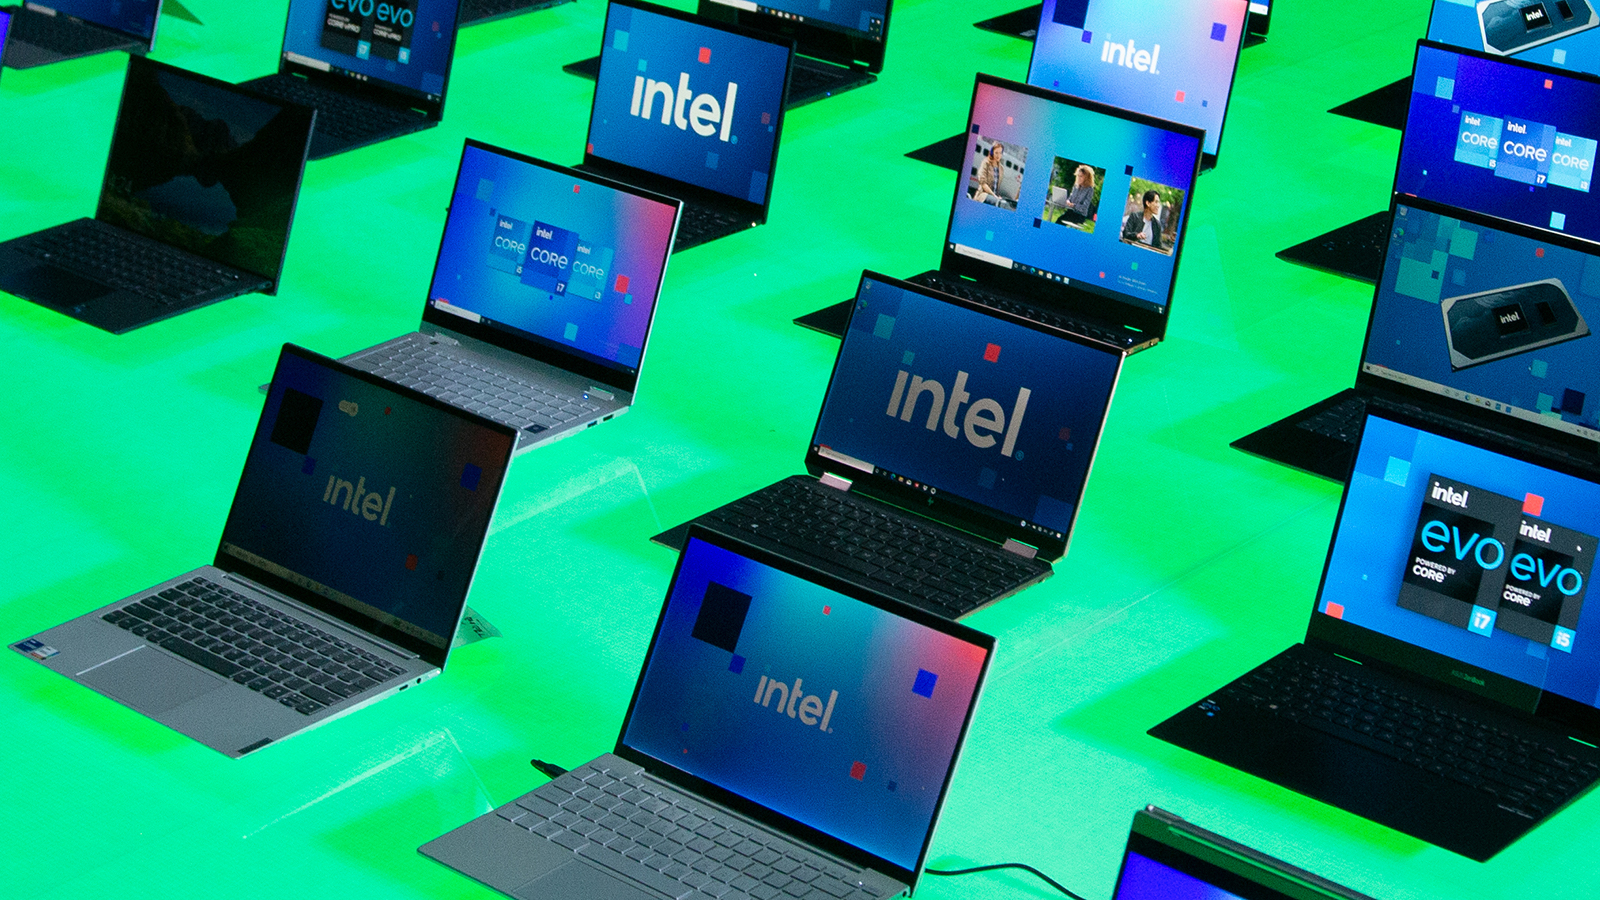 Осторожно, AMD: Intel впервые в мире представляет 24-ядерный процессор для ноутбуков